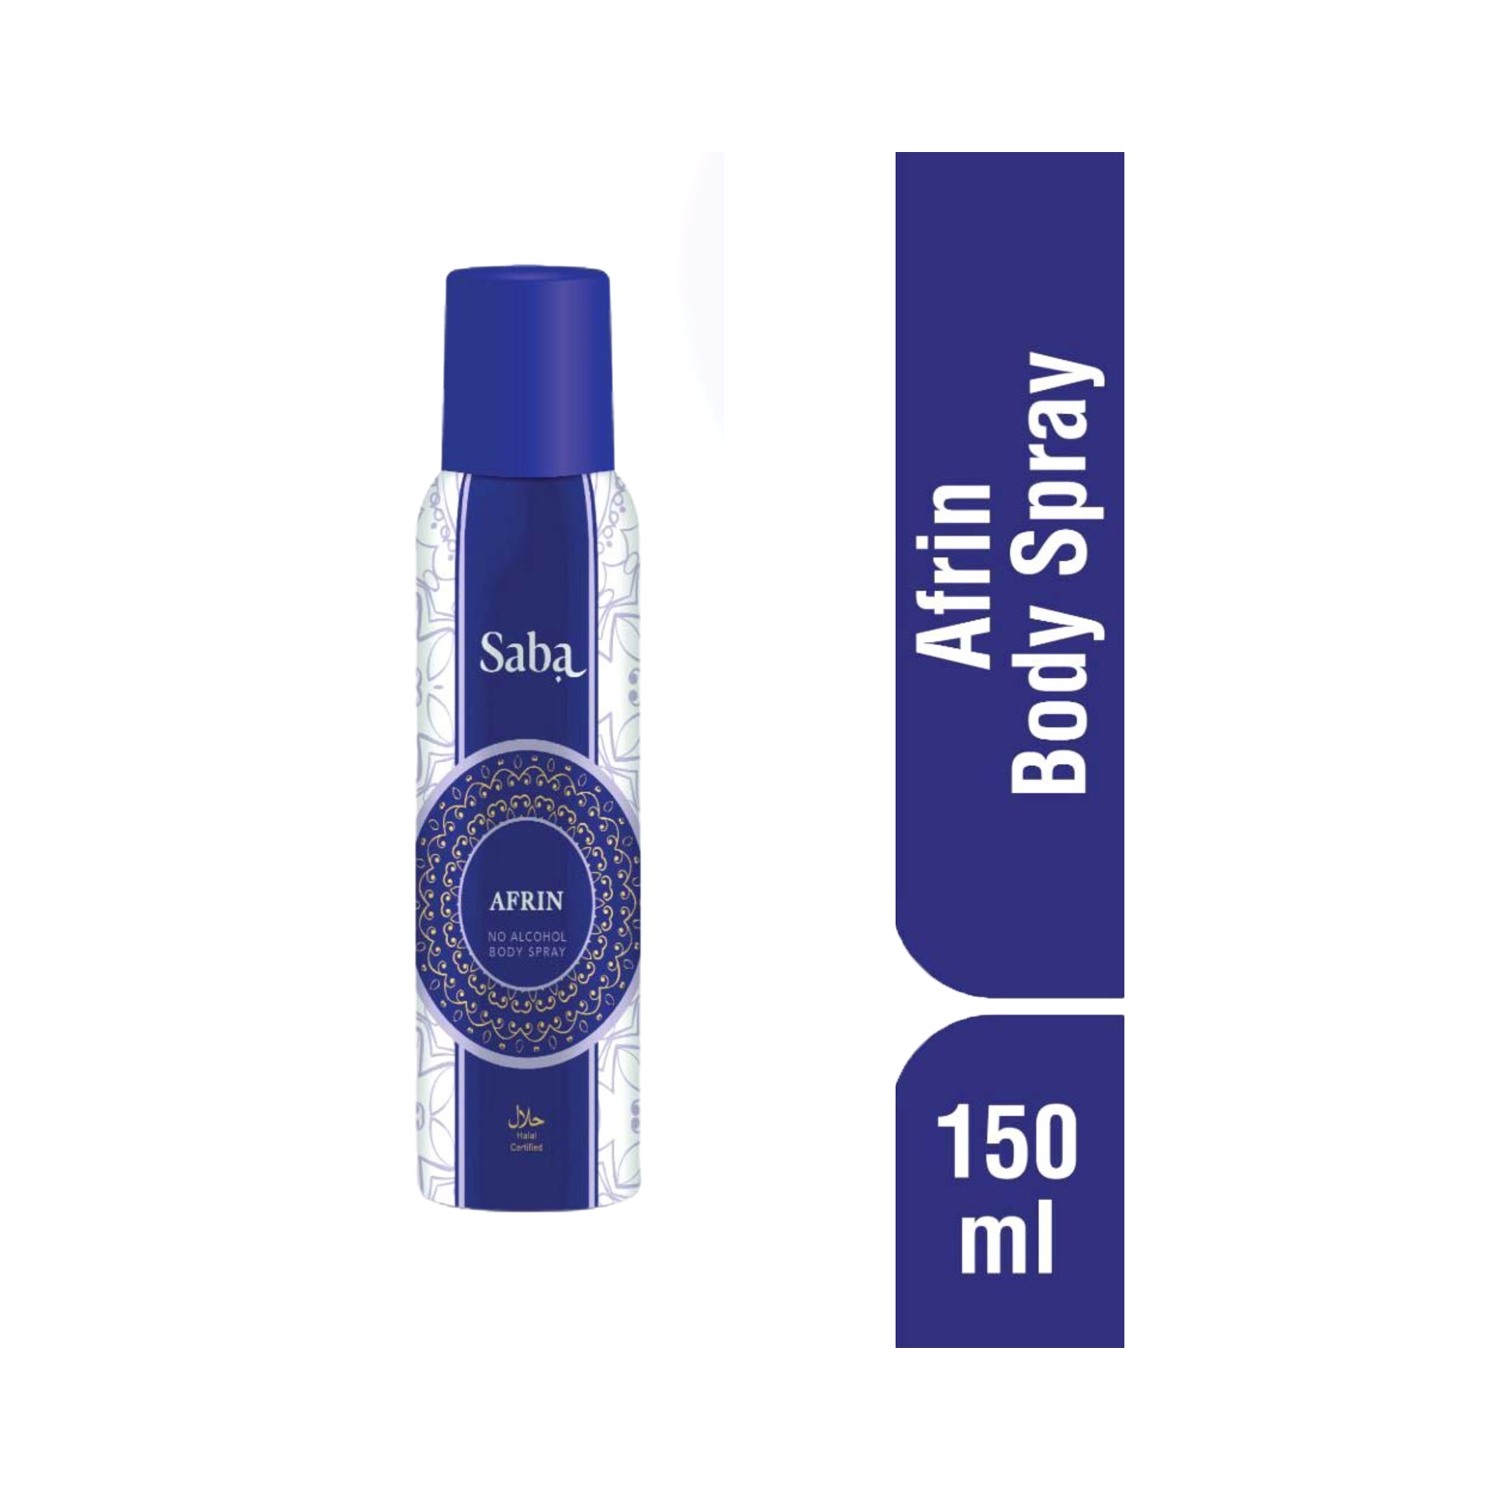 Saba | Saba Afrin No Alcohol Body Spray (150ml)